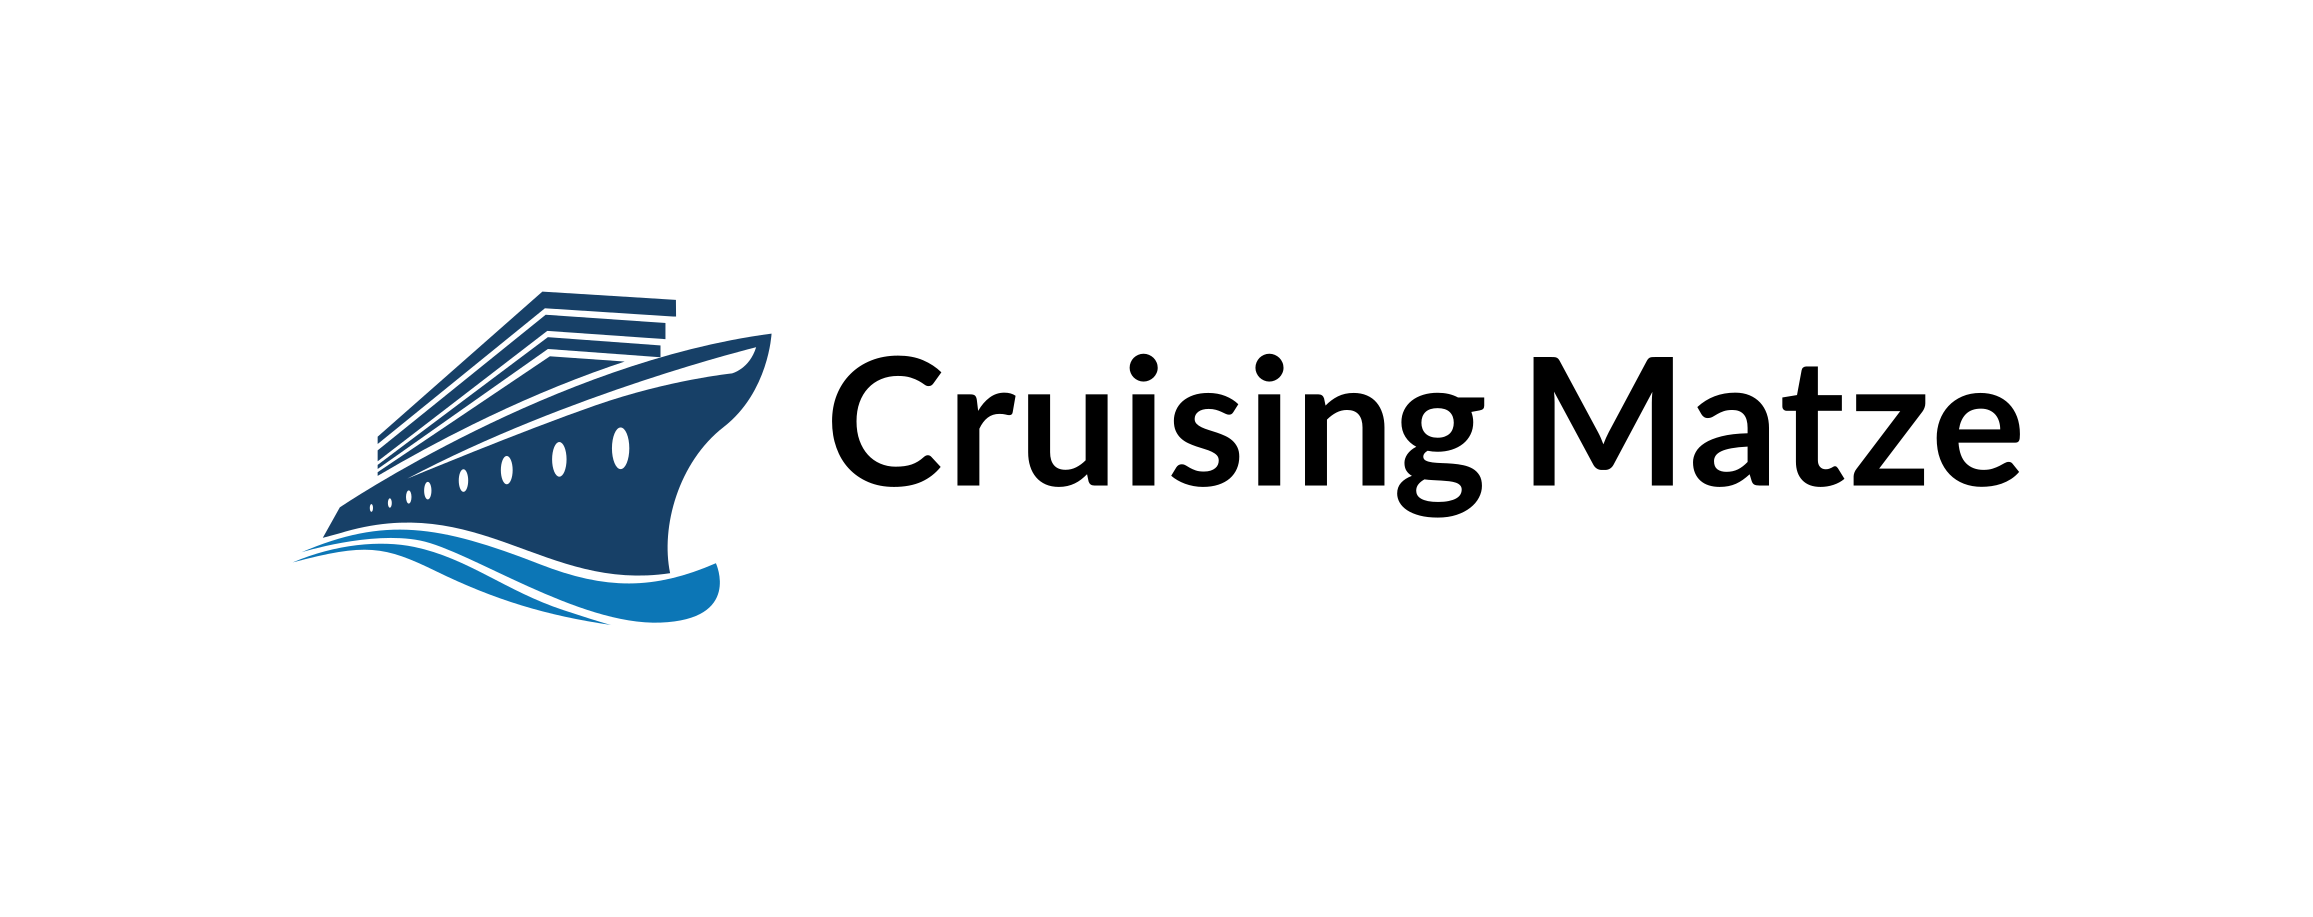 Cruising Matze – Reise- und Kreuzfahrtblog